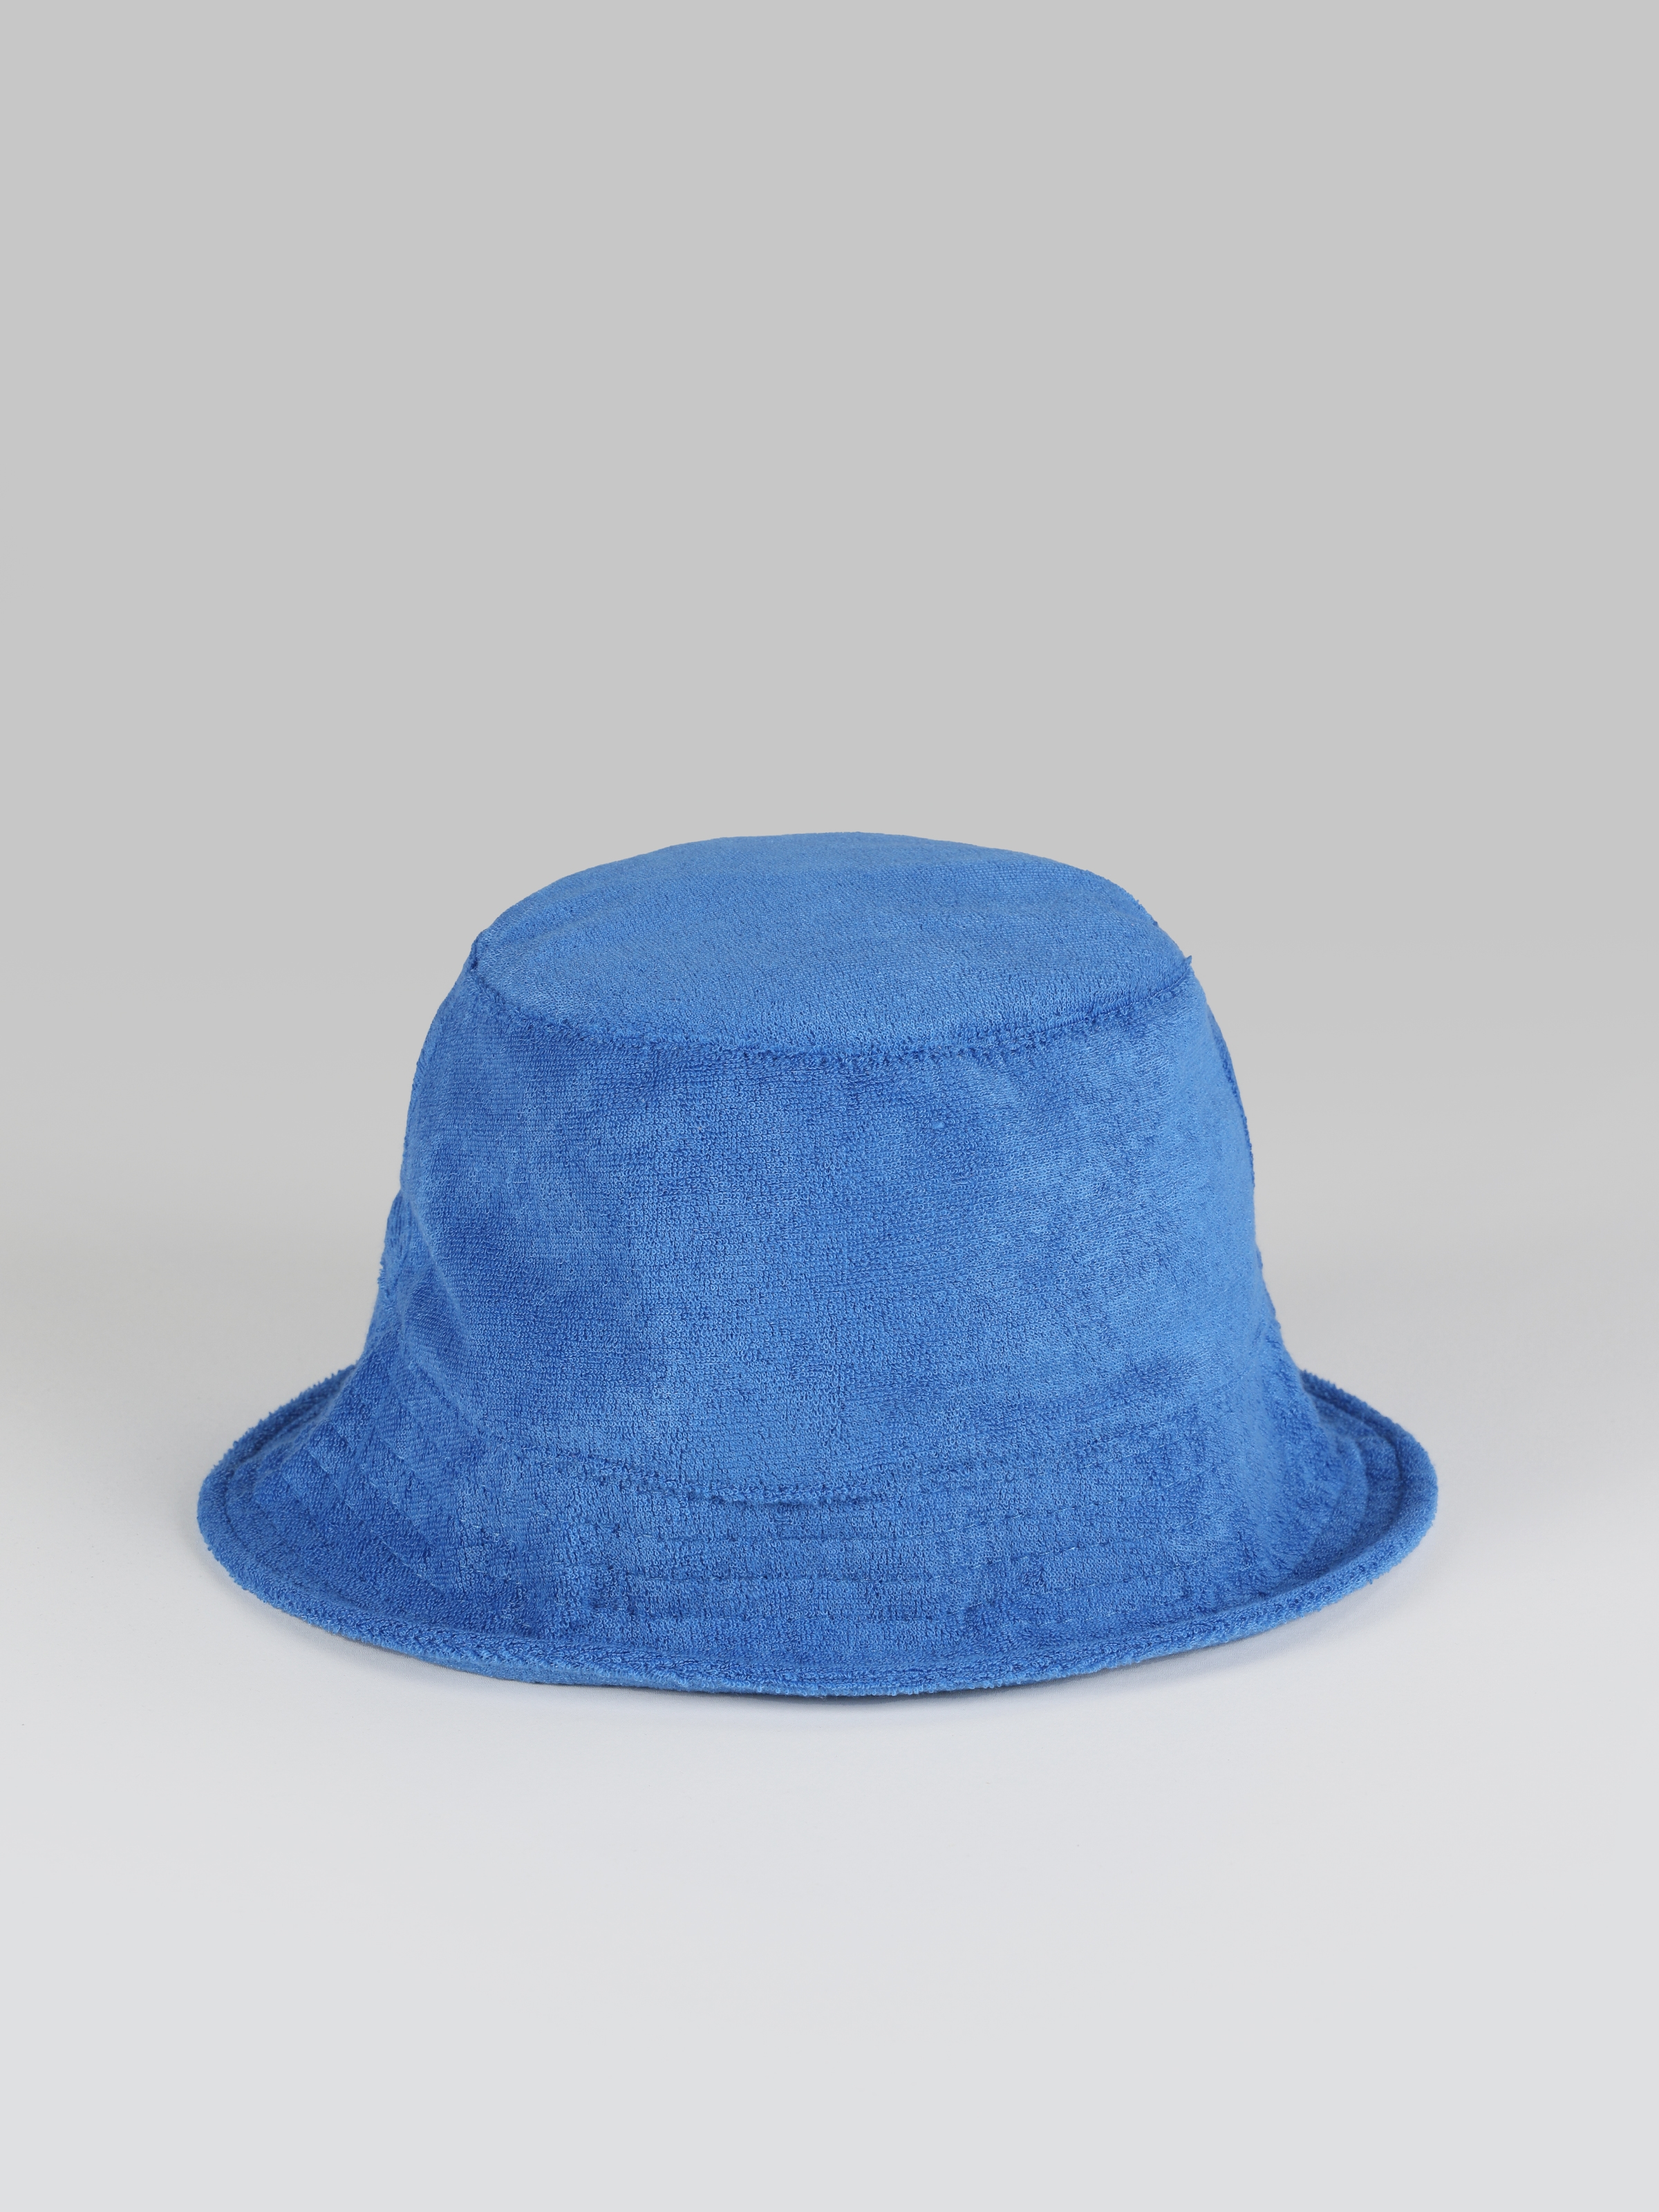 اعرض التفاصيل لـ دلو دلو قبعة المرأة الزرقاء